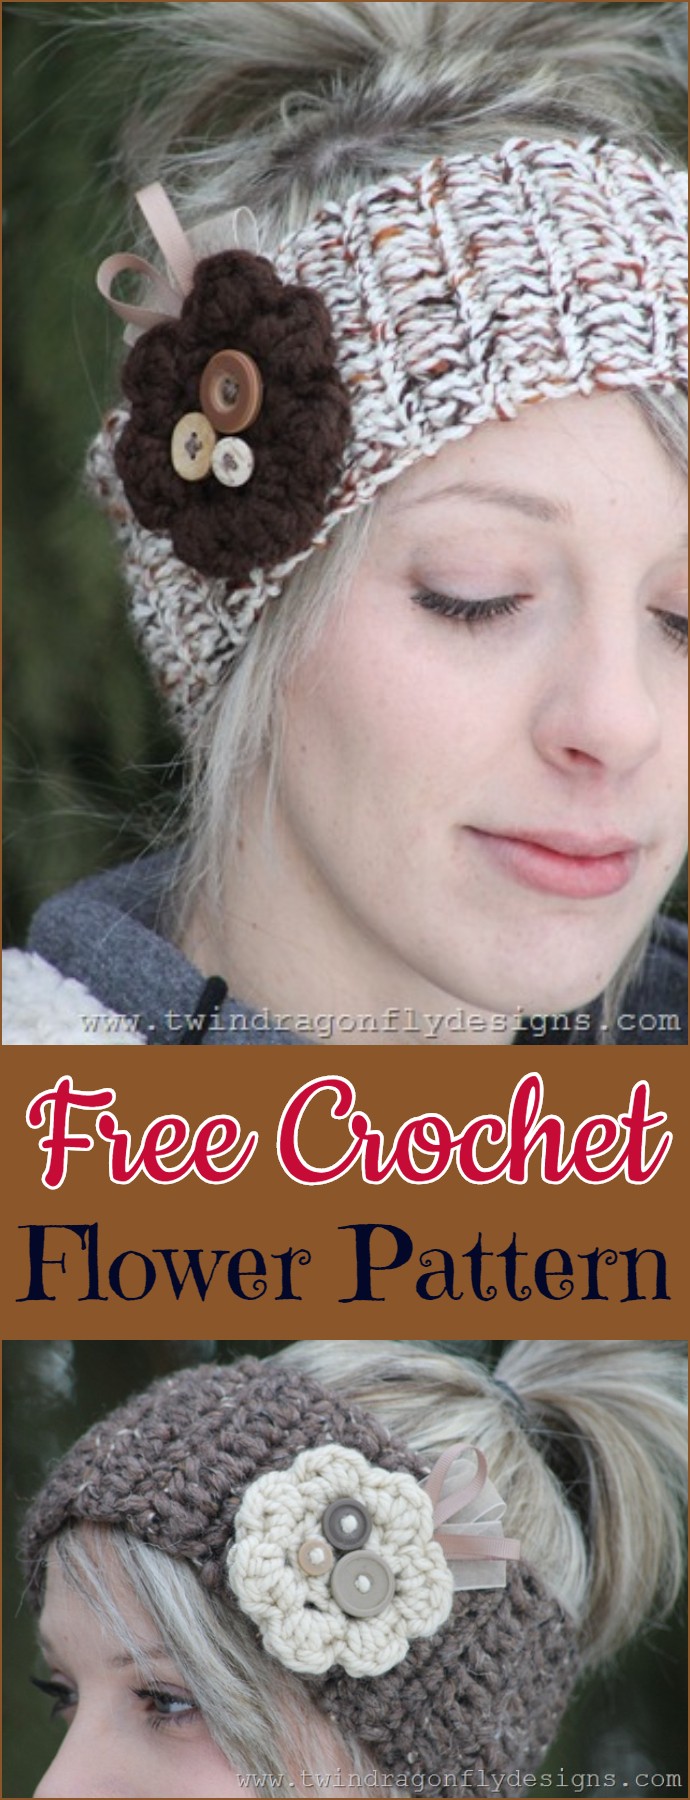 Free Crochet Flower Pattern